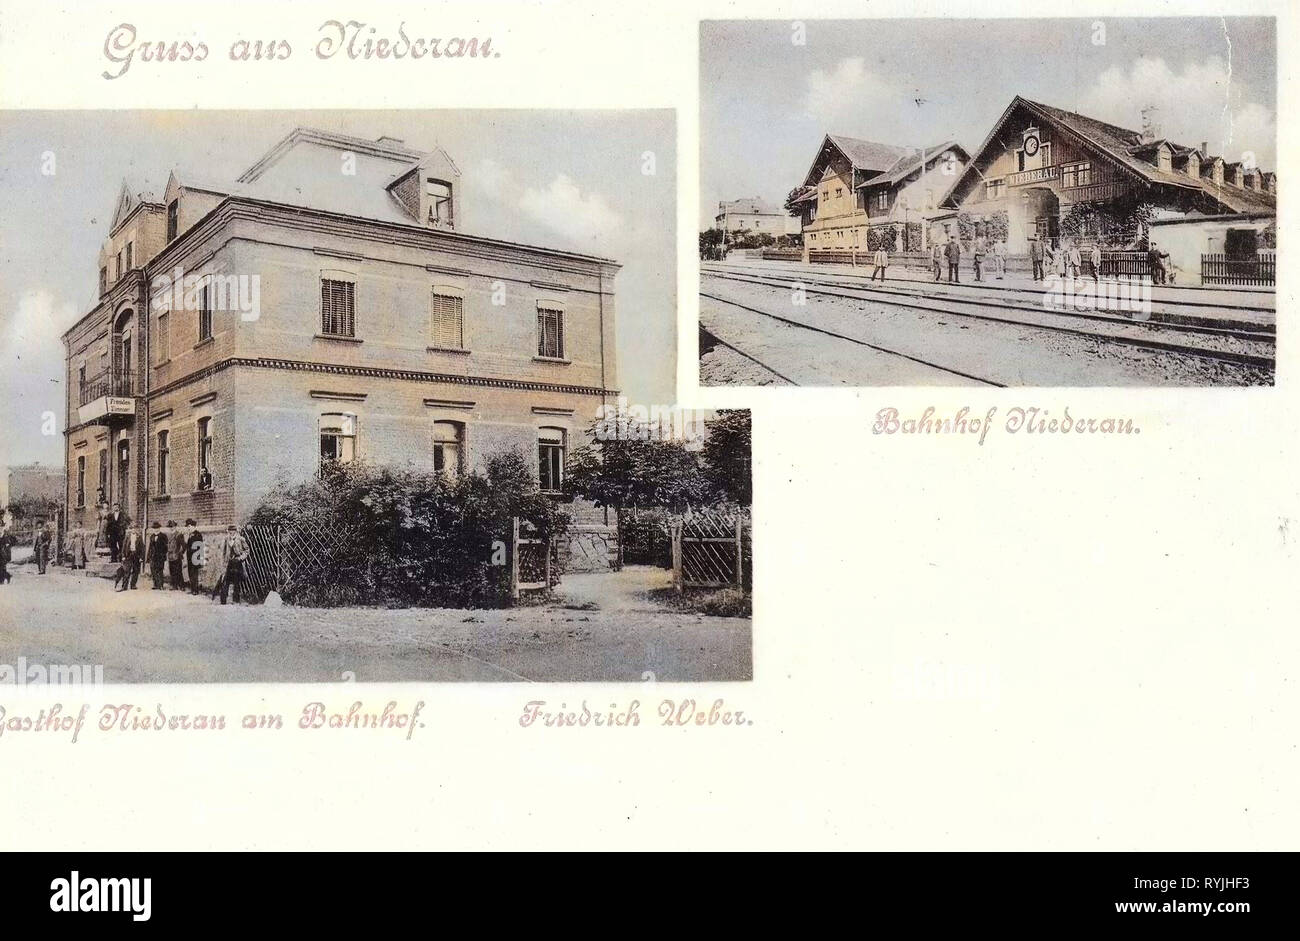 Bahnhof Niederau, Restaurants im Landkreis Meißen, Multiview Postkarten, Niederau, 1898, Landkreis Meißen, Gasthof am Bahnhof, Bahnhof, Deutschland Stockfoto